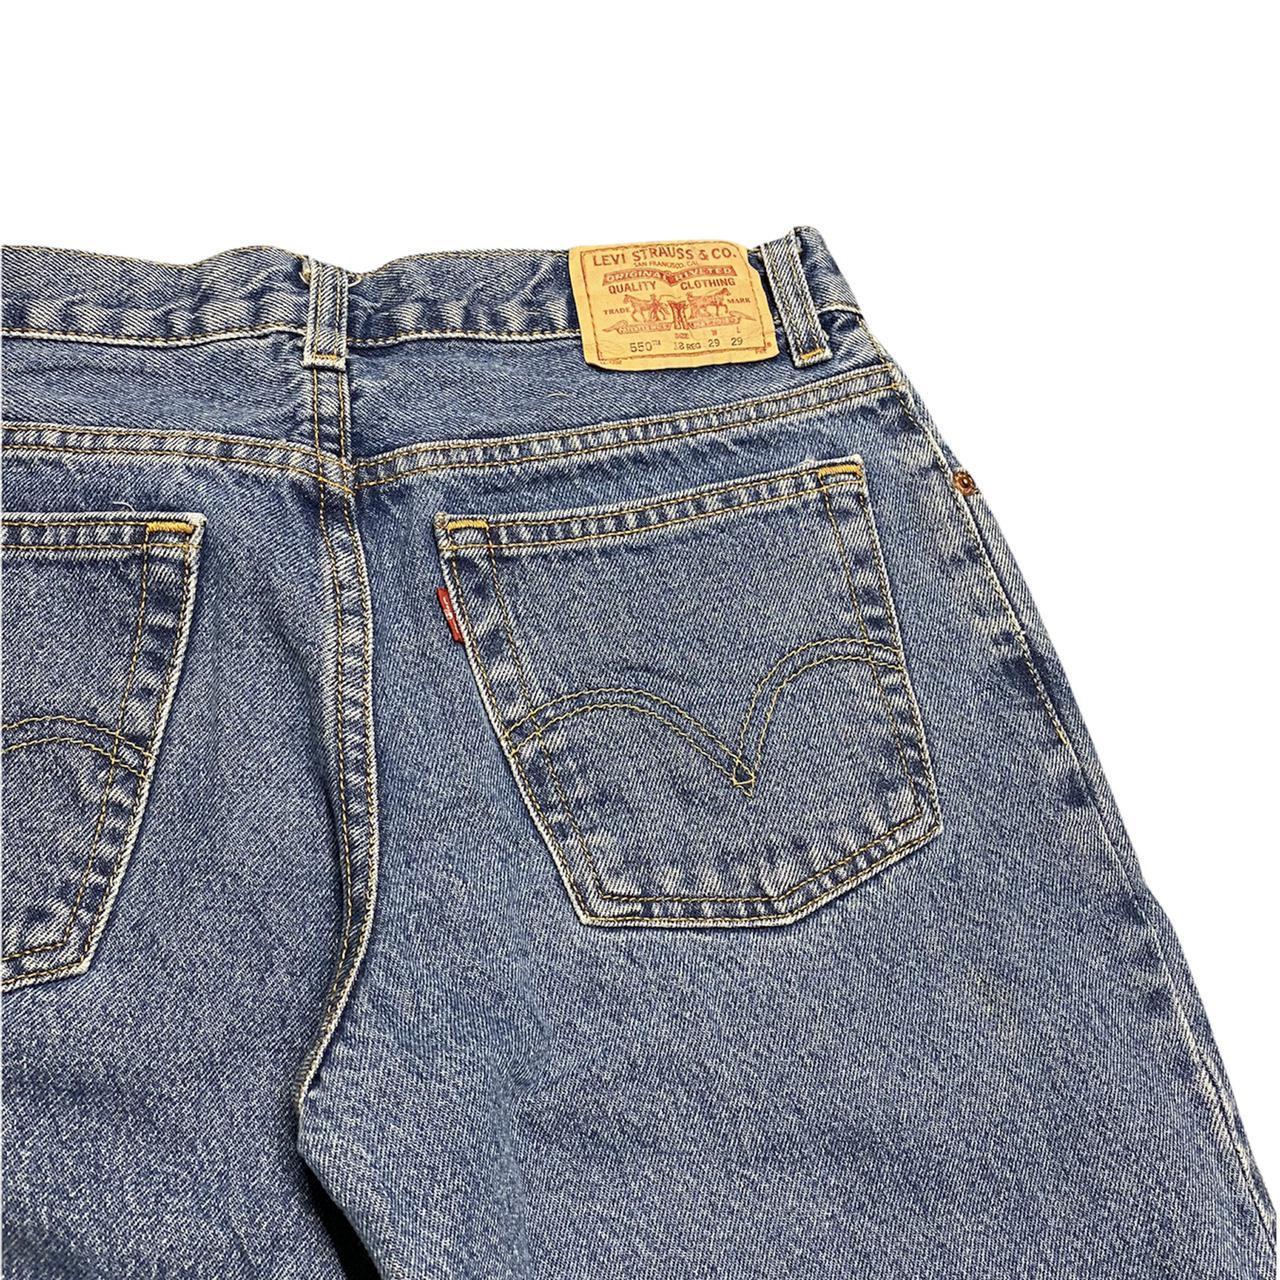 Product Image 3 - VINTAGE Blue Levi’s 550 Jeans